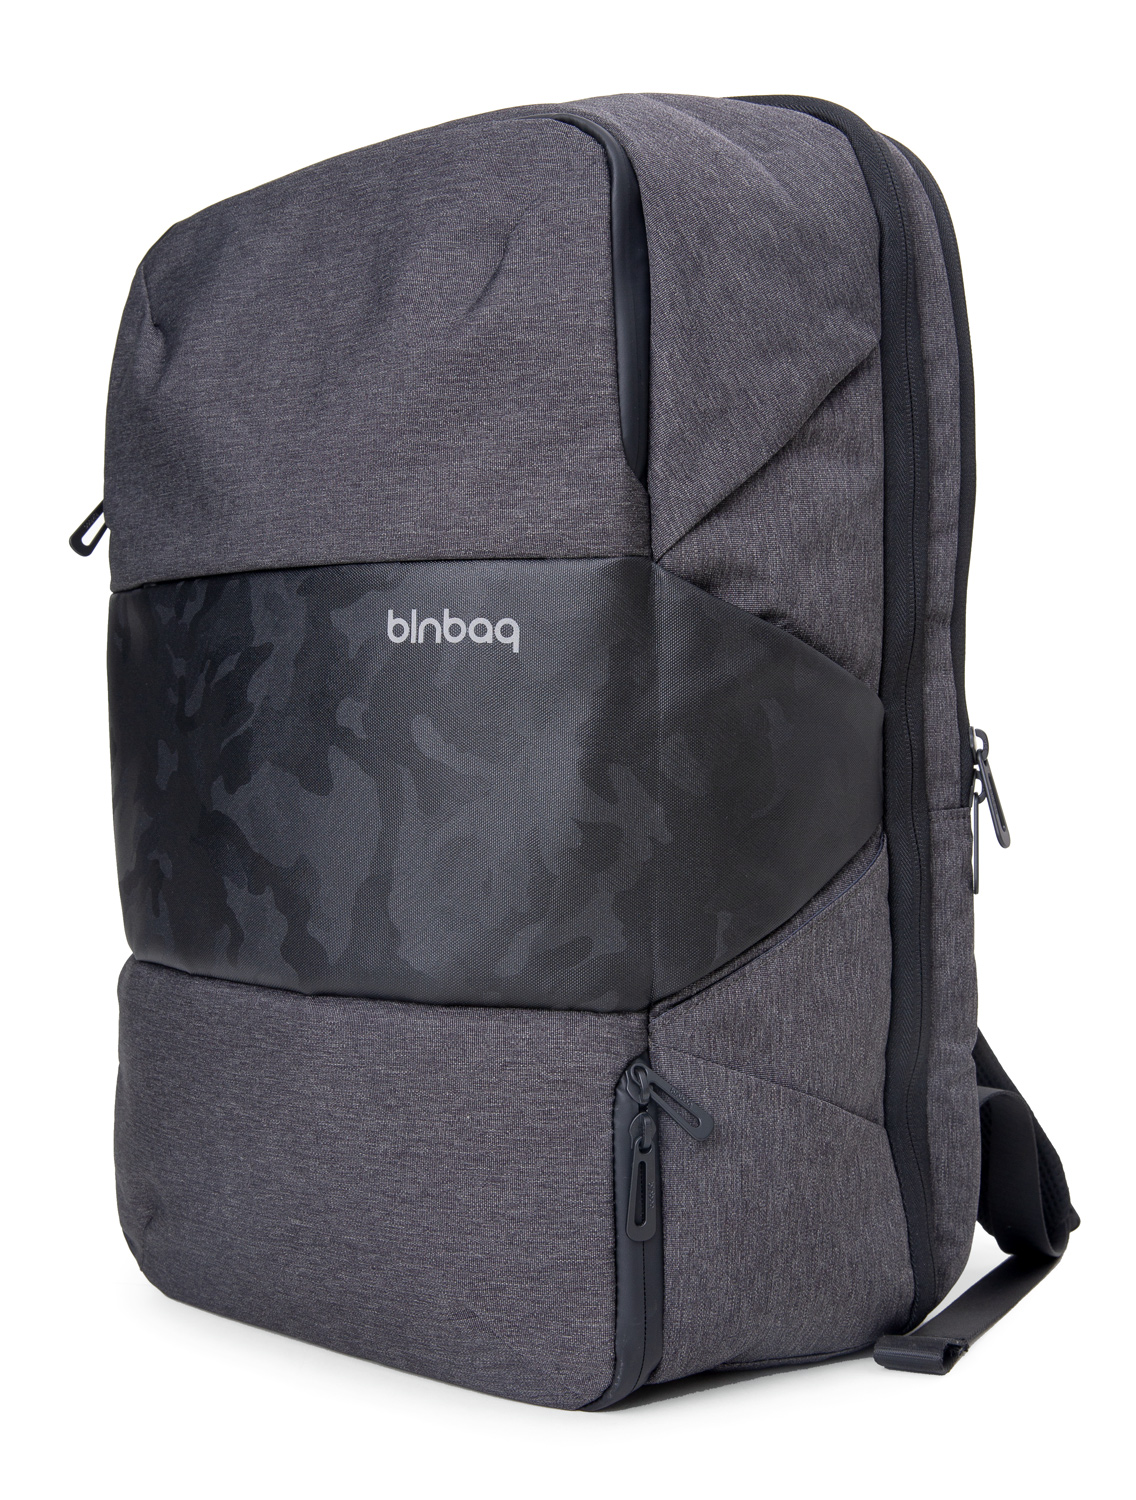 BLNBAG M1 – Handgepäck Reiserucksack mit Laptopfach, USB, 29 Liter